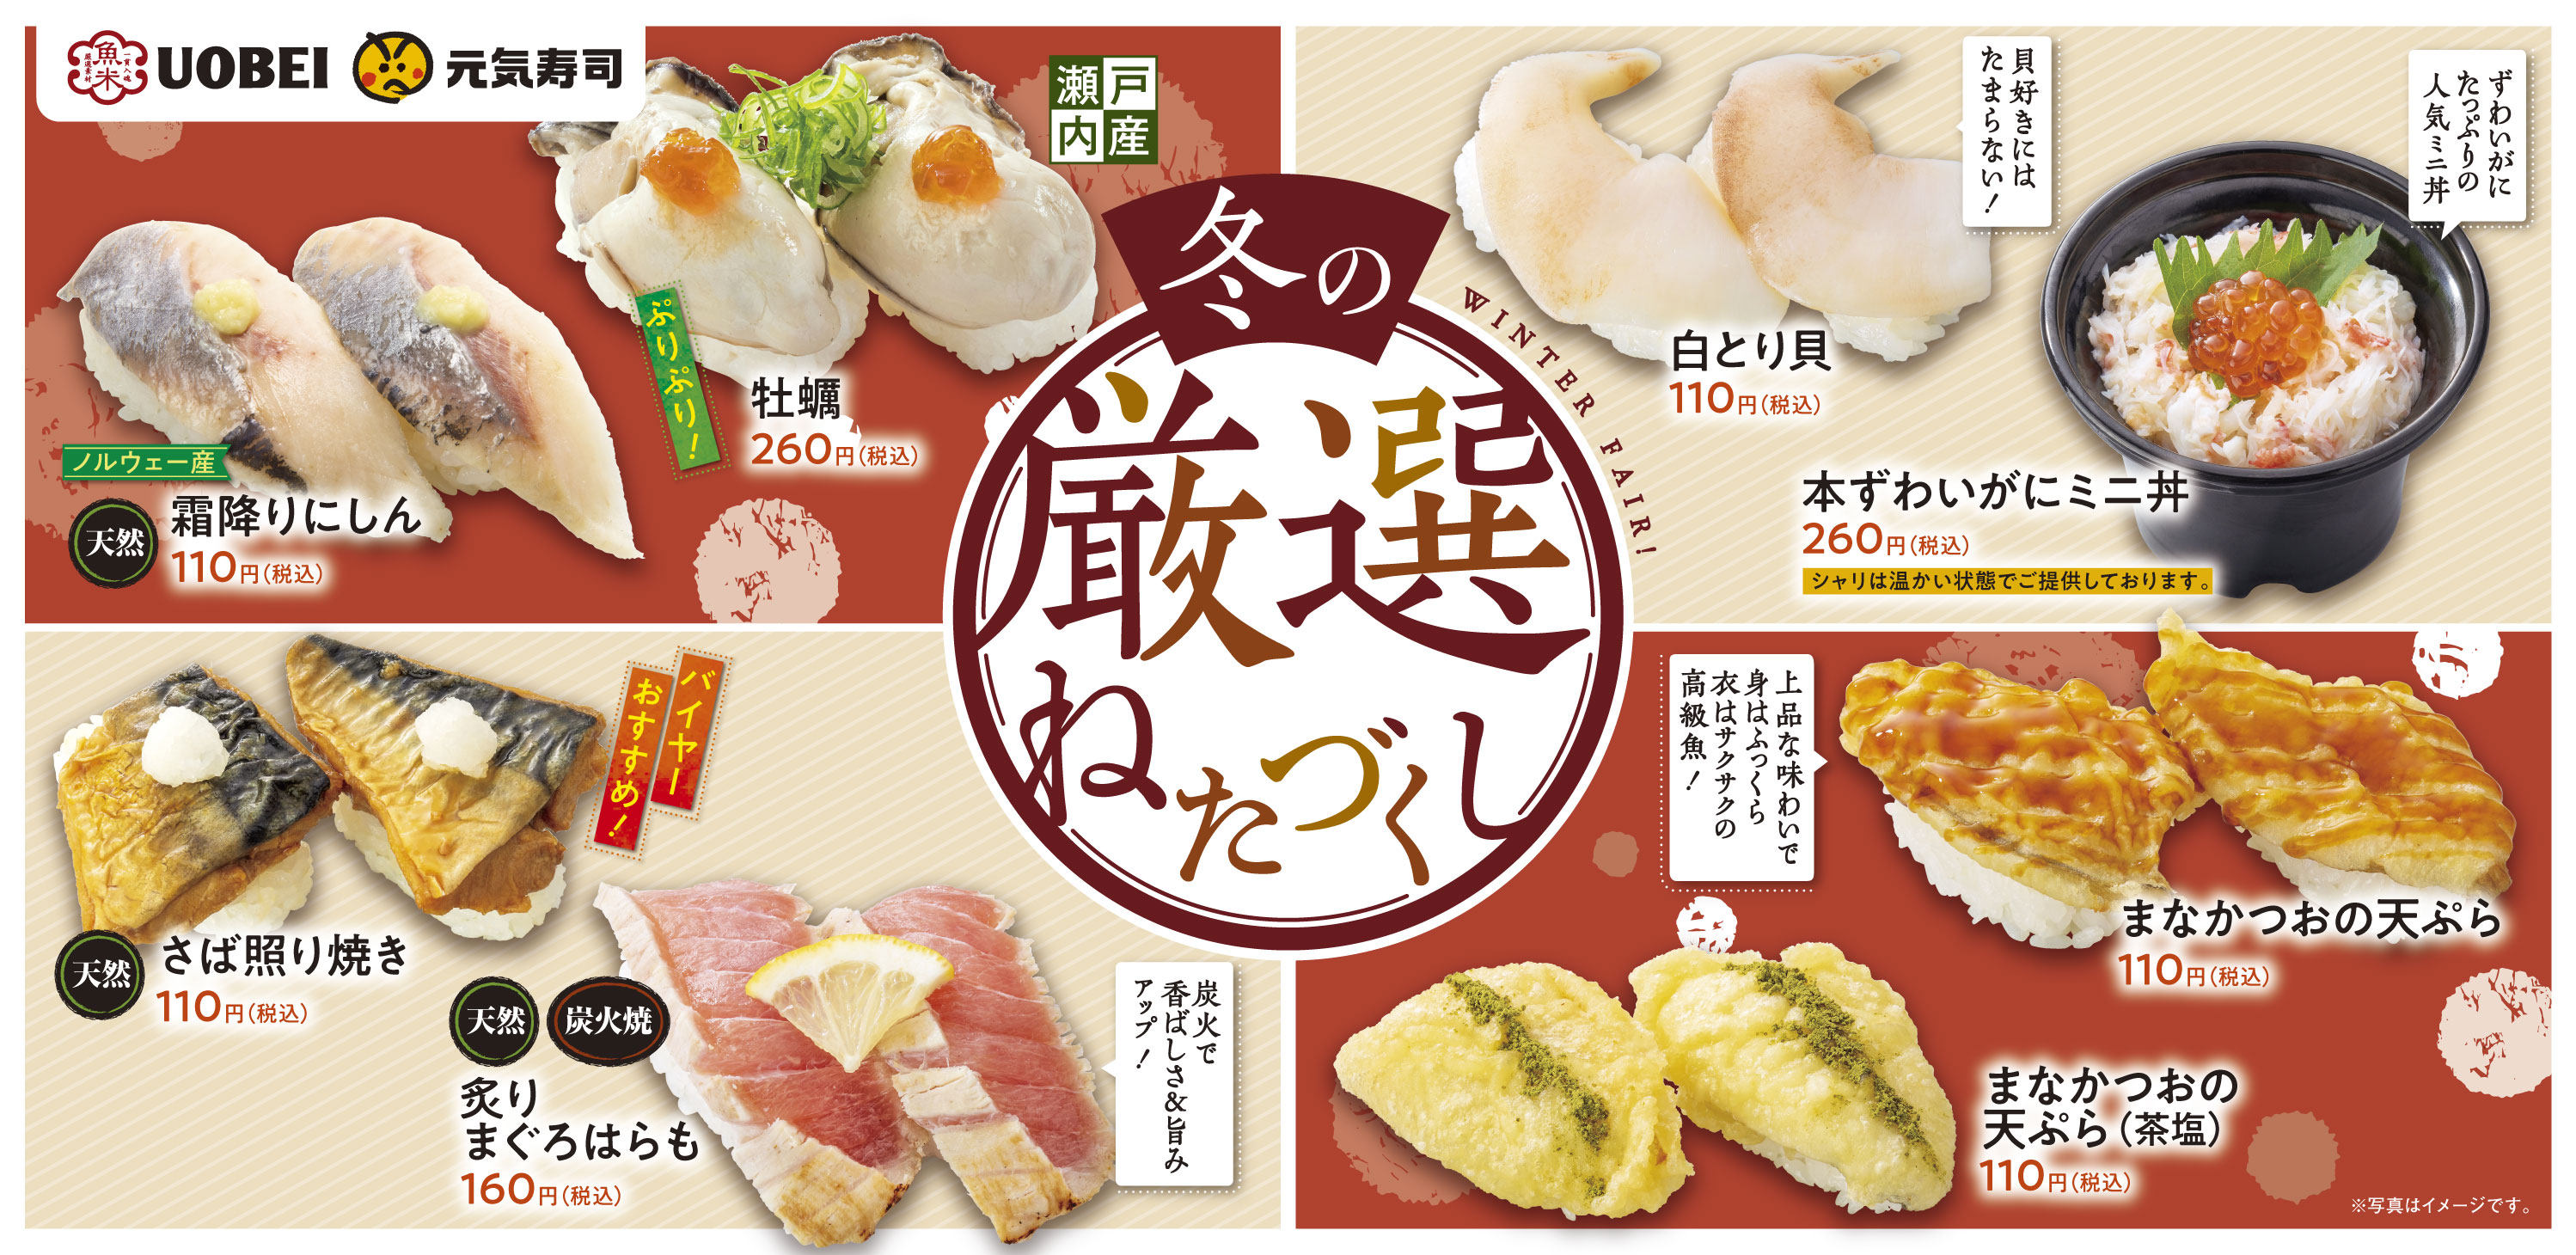 魚べいメニューのご案内 魚べい 元気寿司グループ